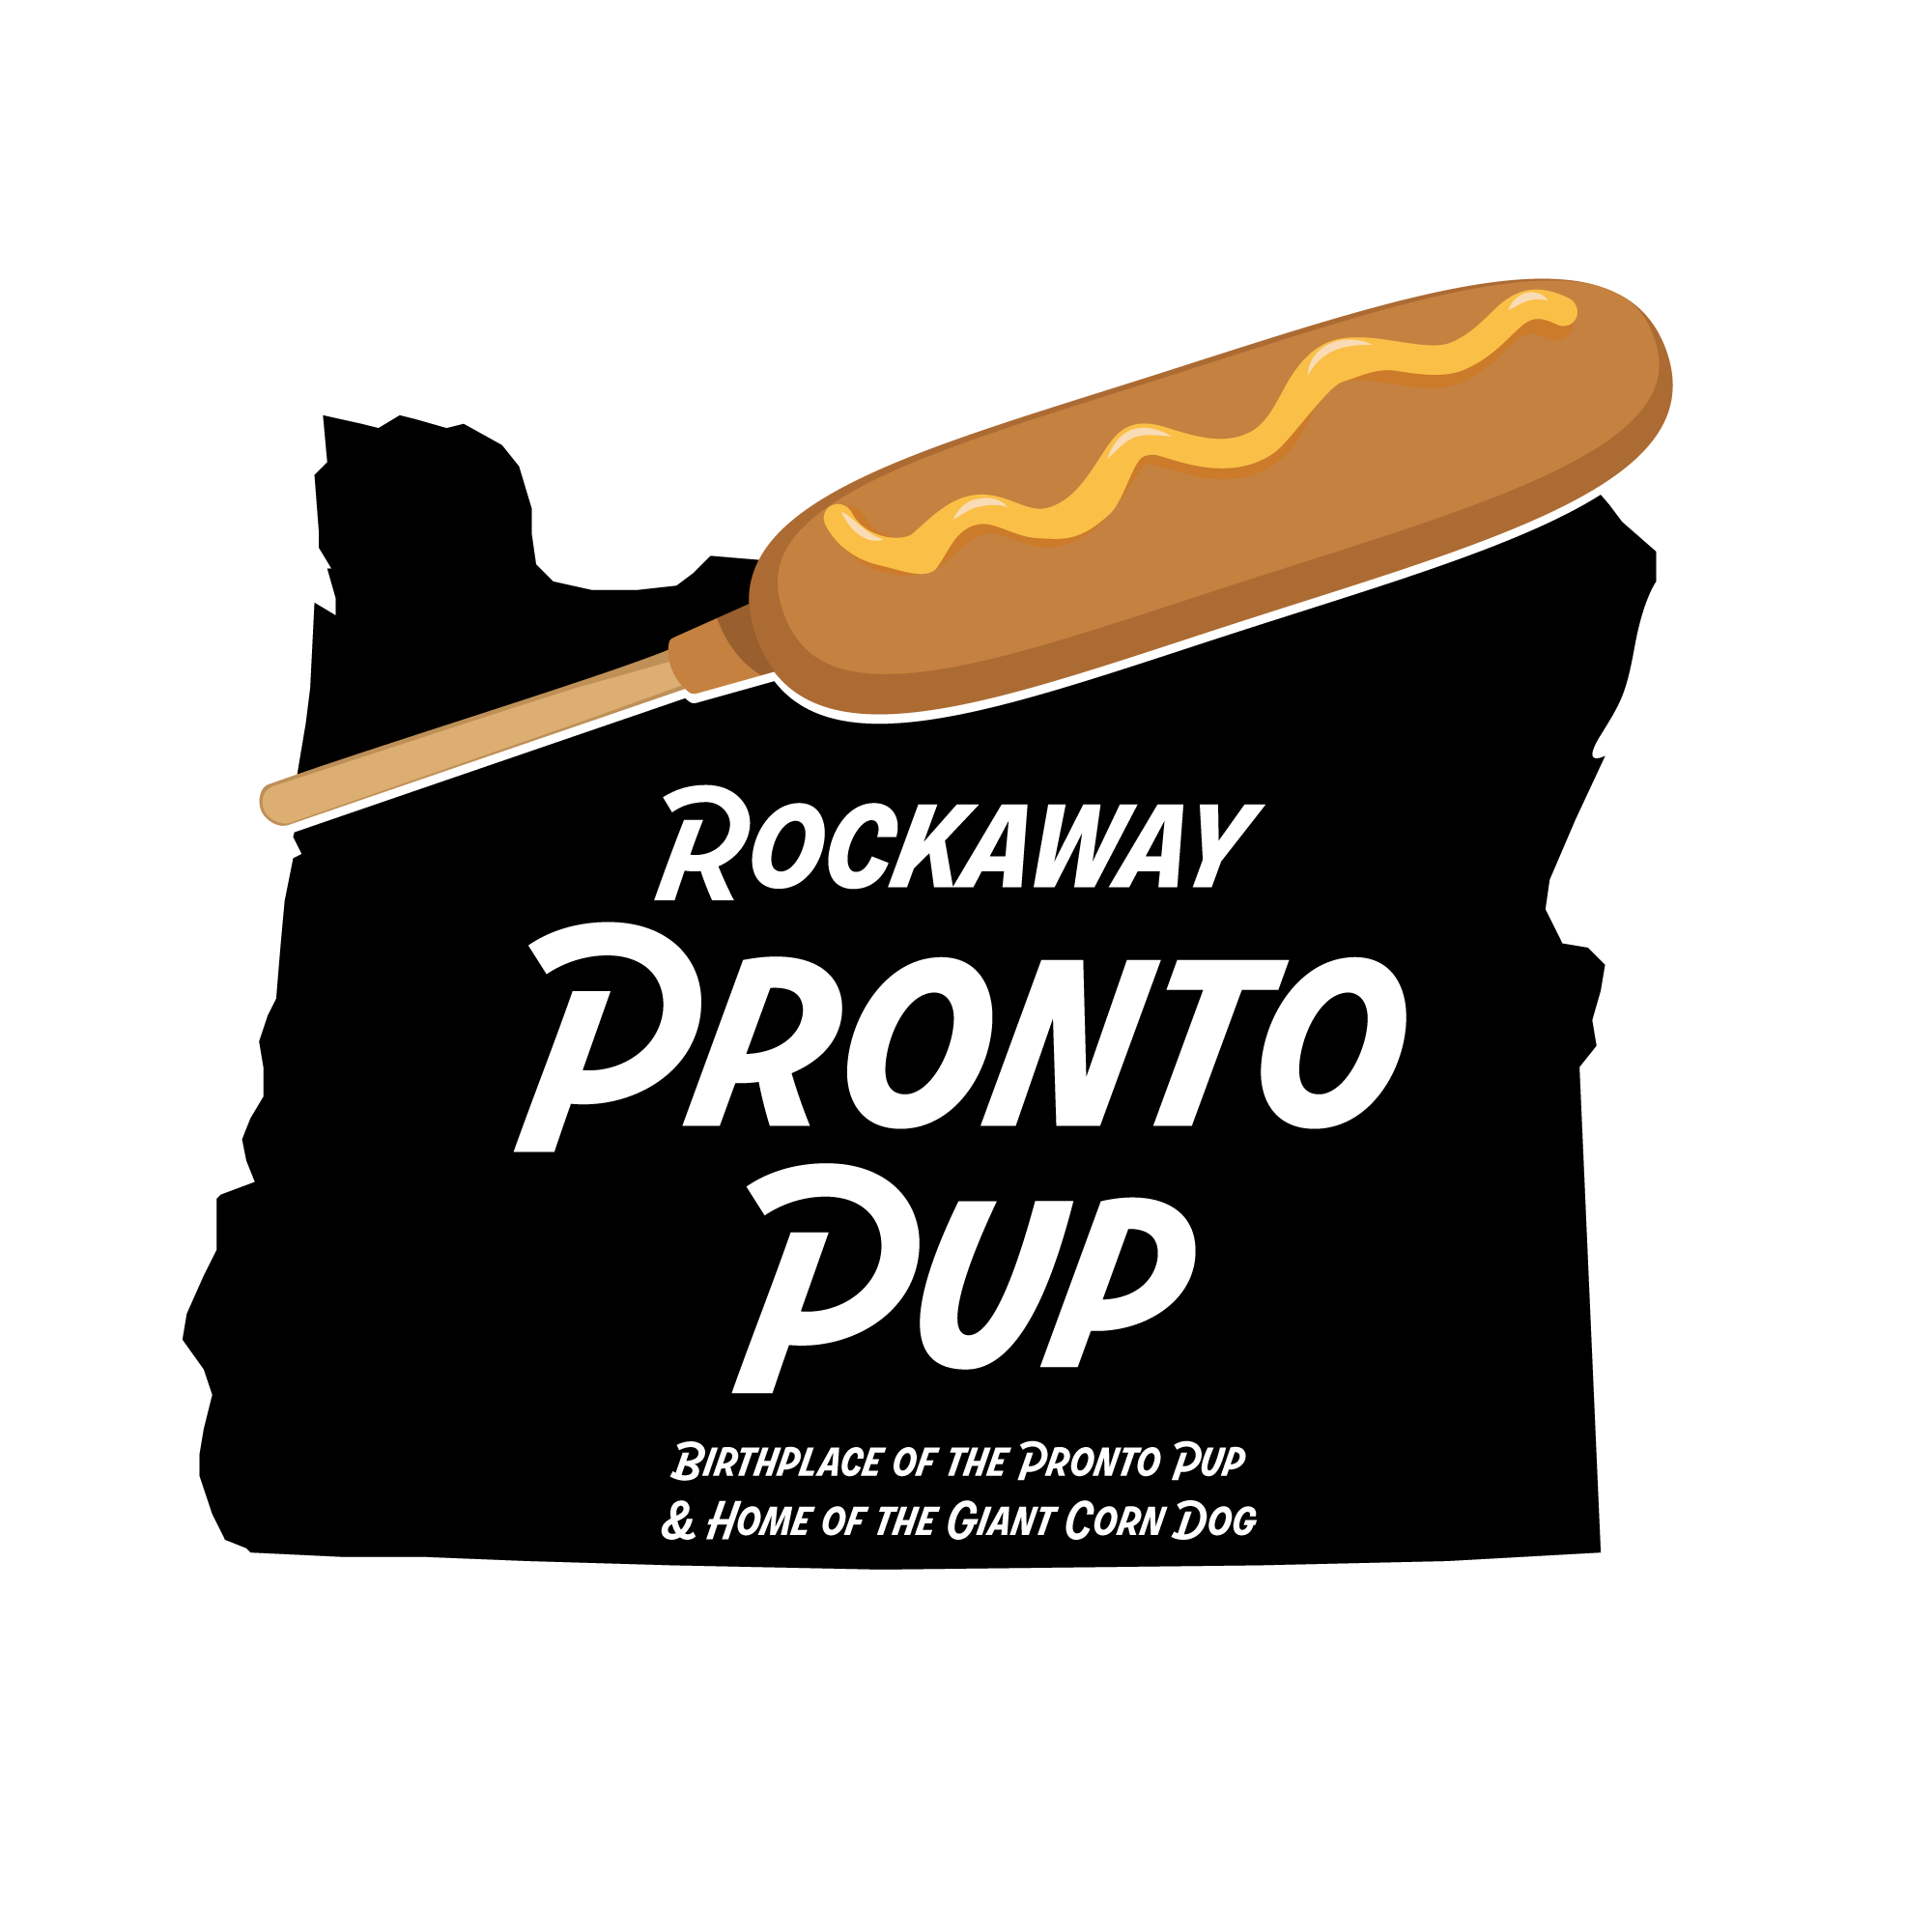 Rockaway Pronto Pup